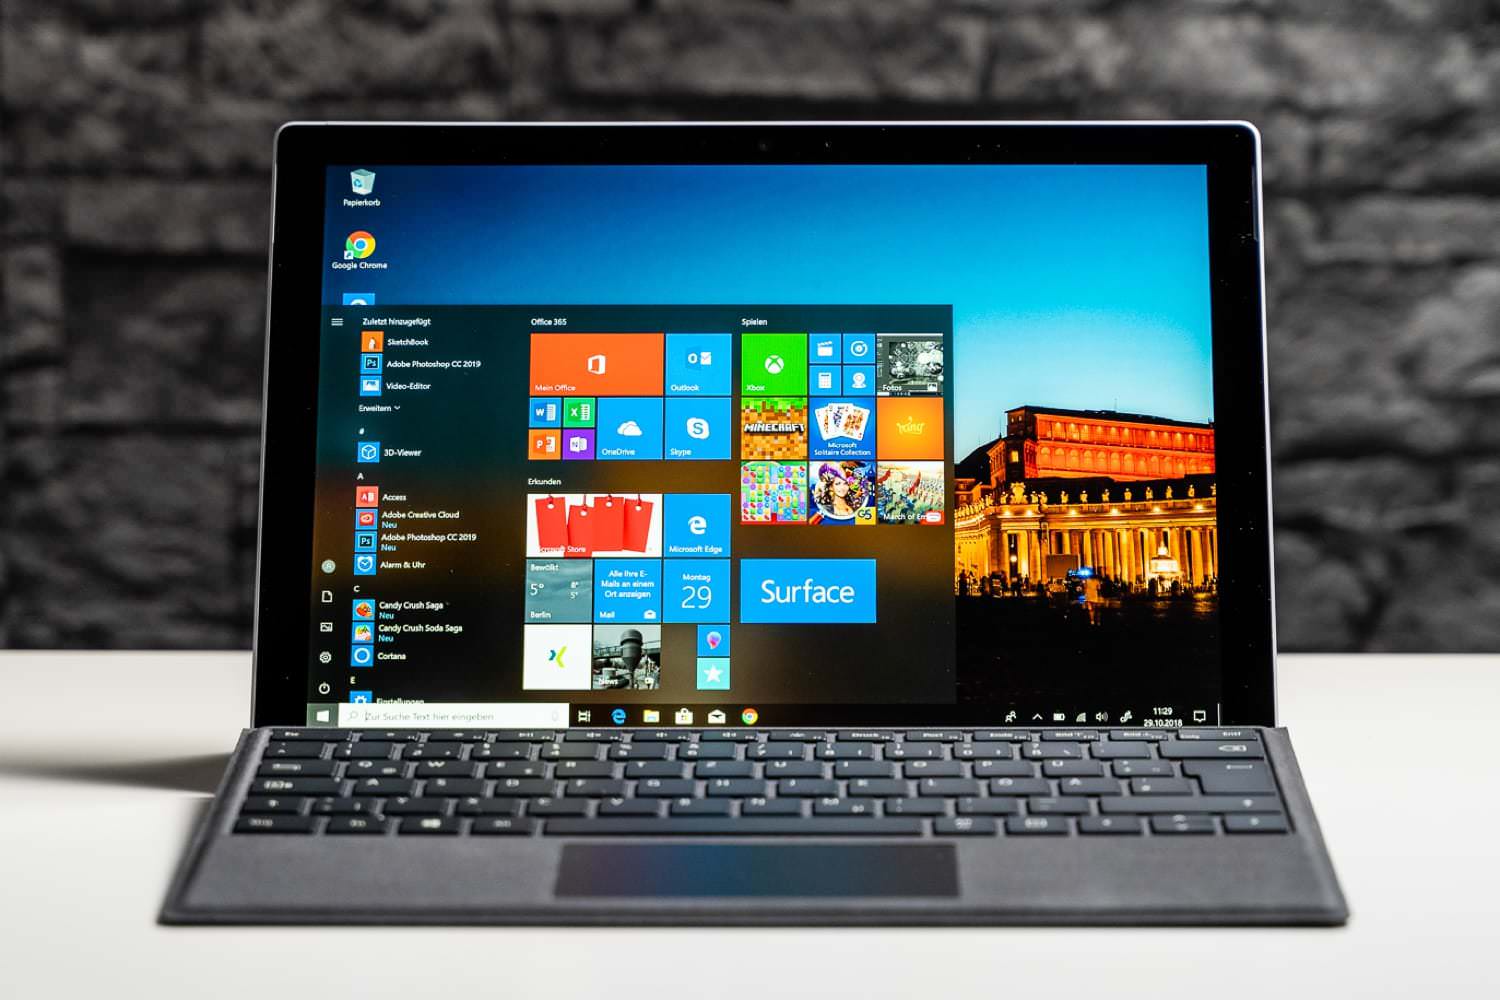 Купить Операционную Систему Windows 10 Для Ноутбука